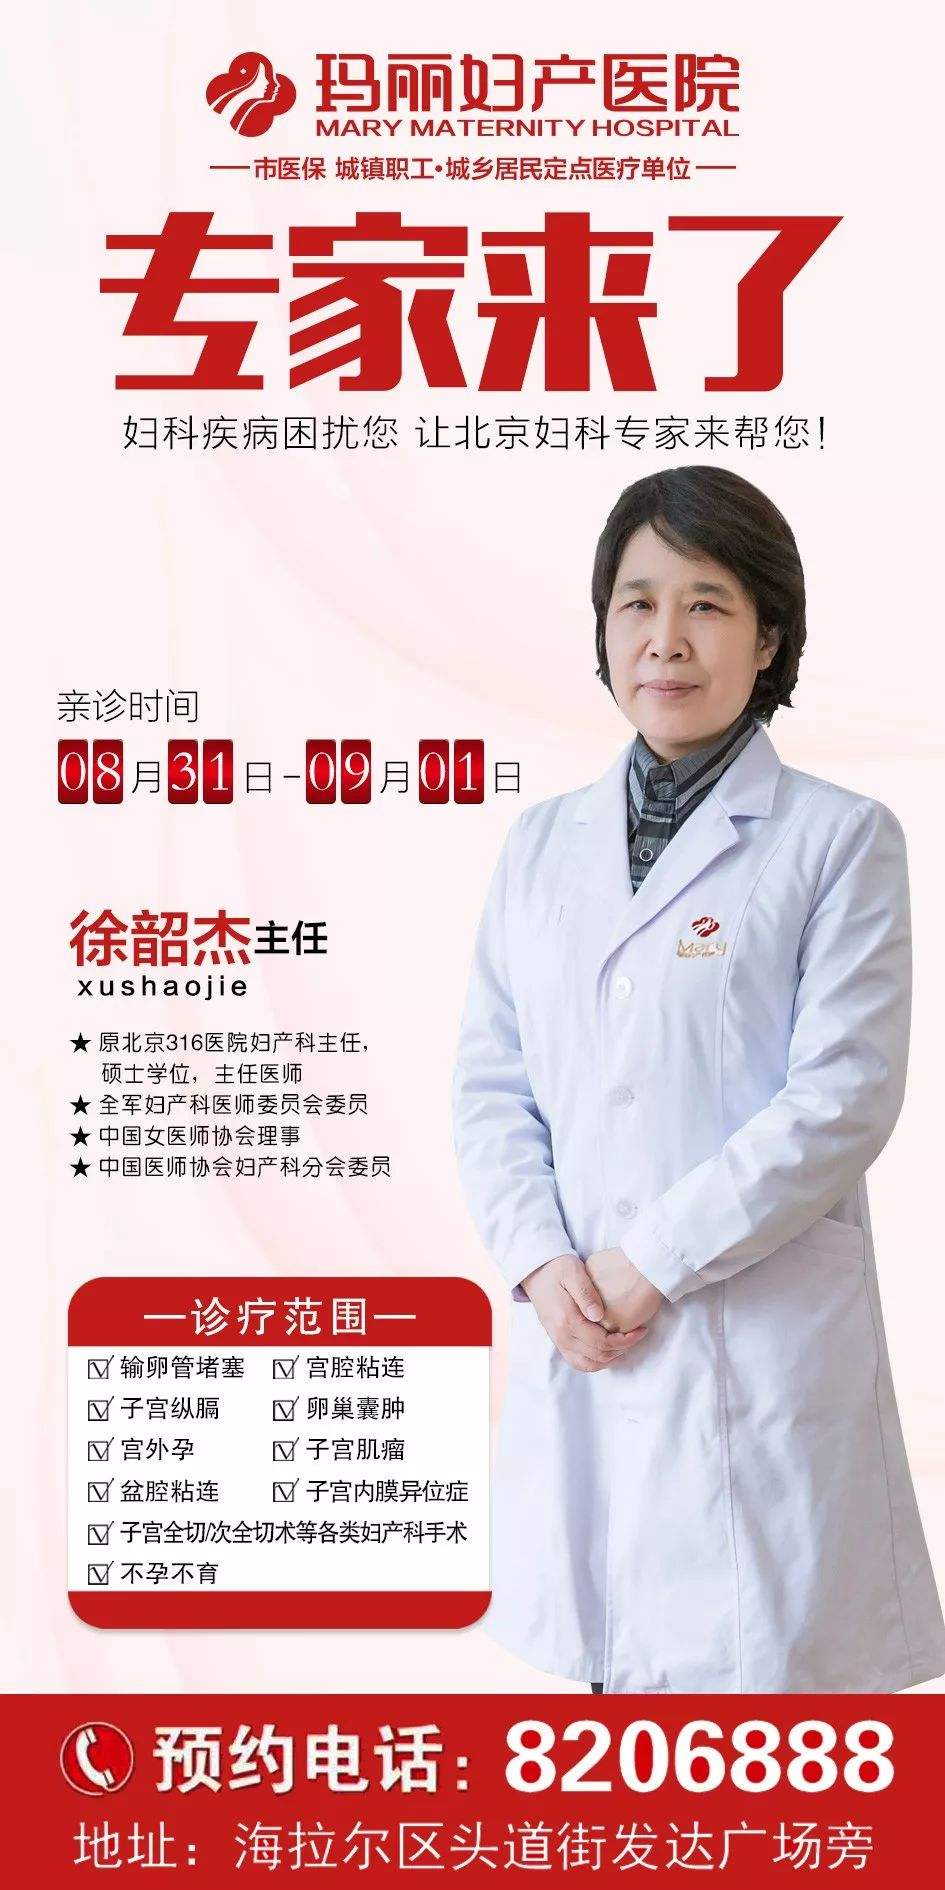 包含北京妇产医院跑腿代挂专家号，预约成功再收费的词条